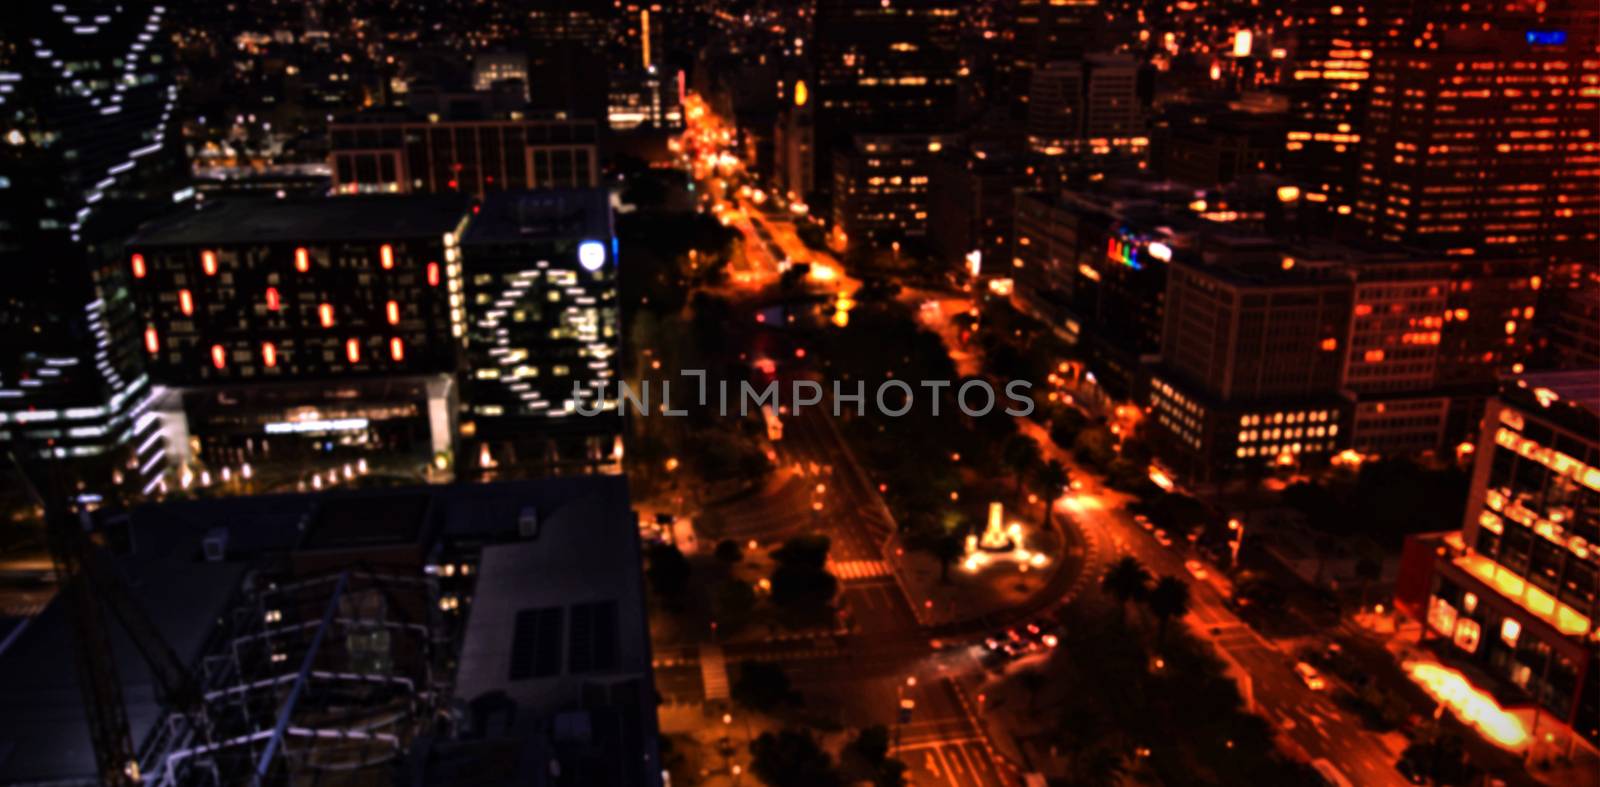 Illuminated city at night by Wavebreakmedia